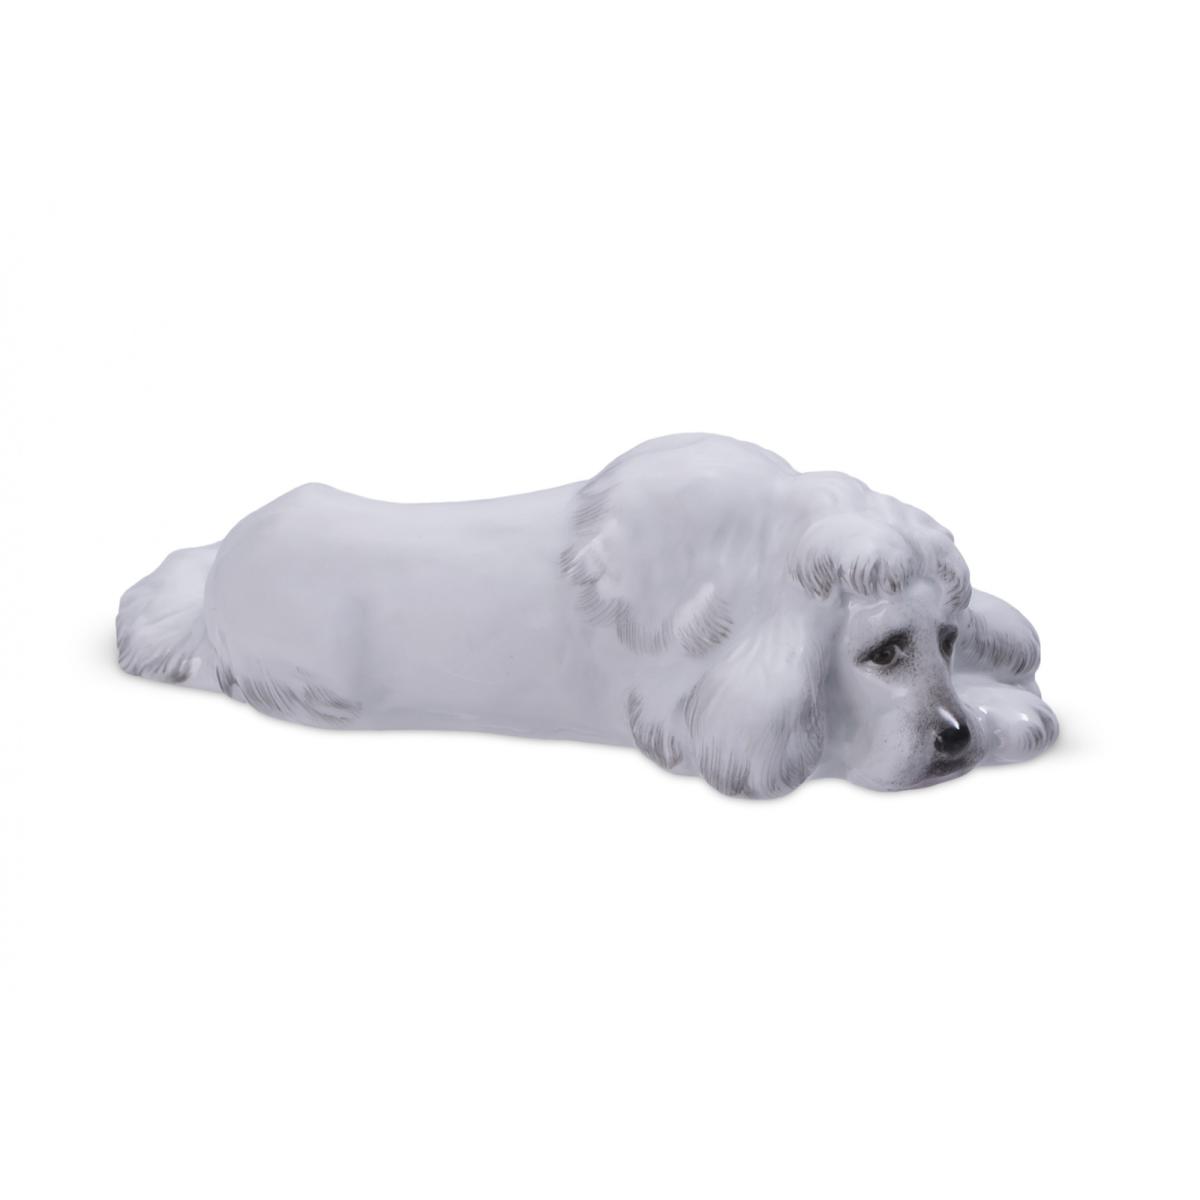 Скульптура "Грустный пес" (Джесси - белый пудель) автор Малышева Н.А.